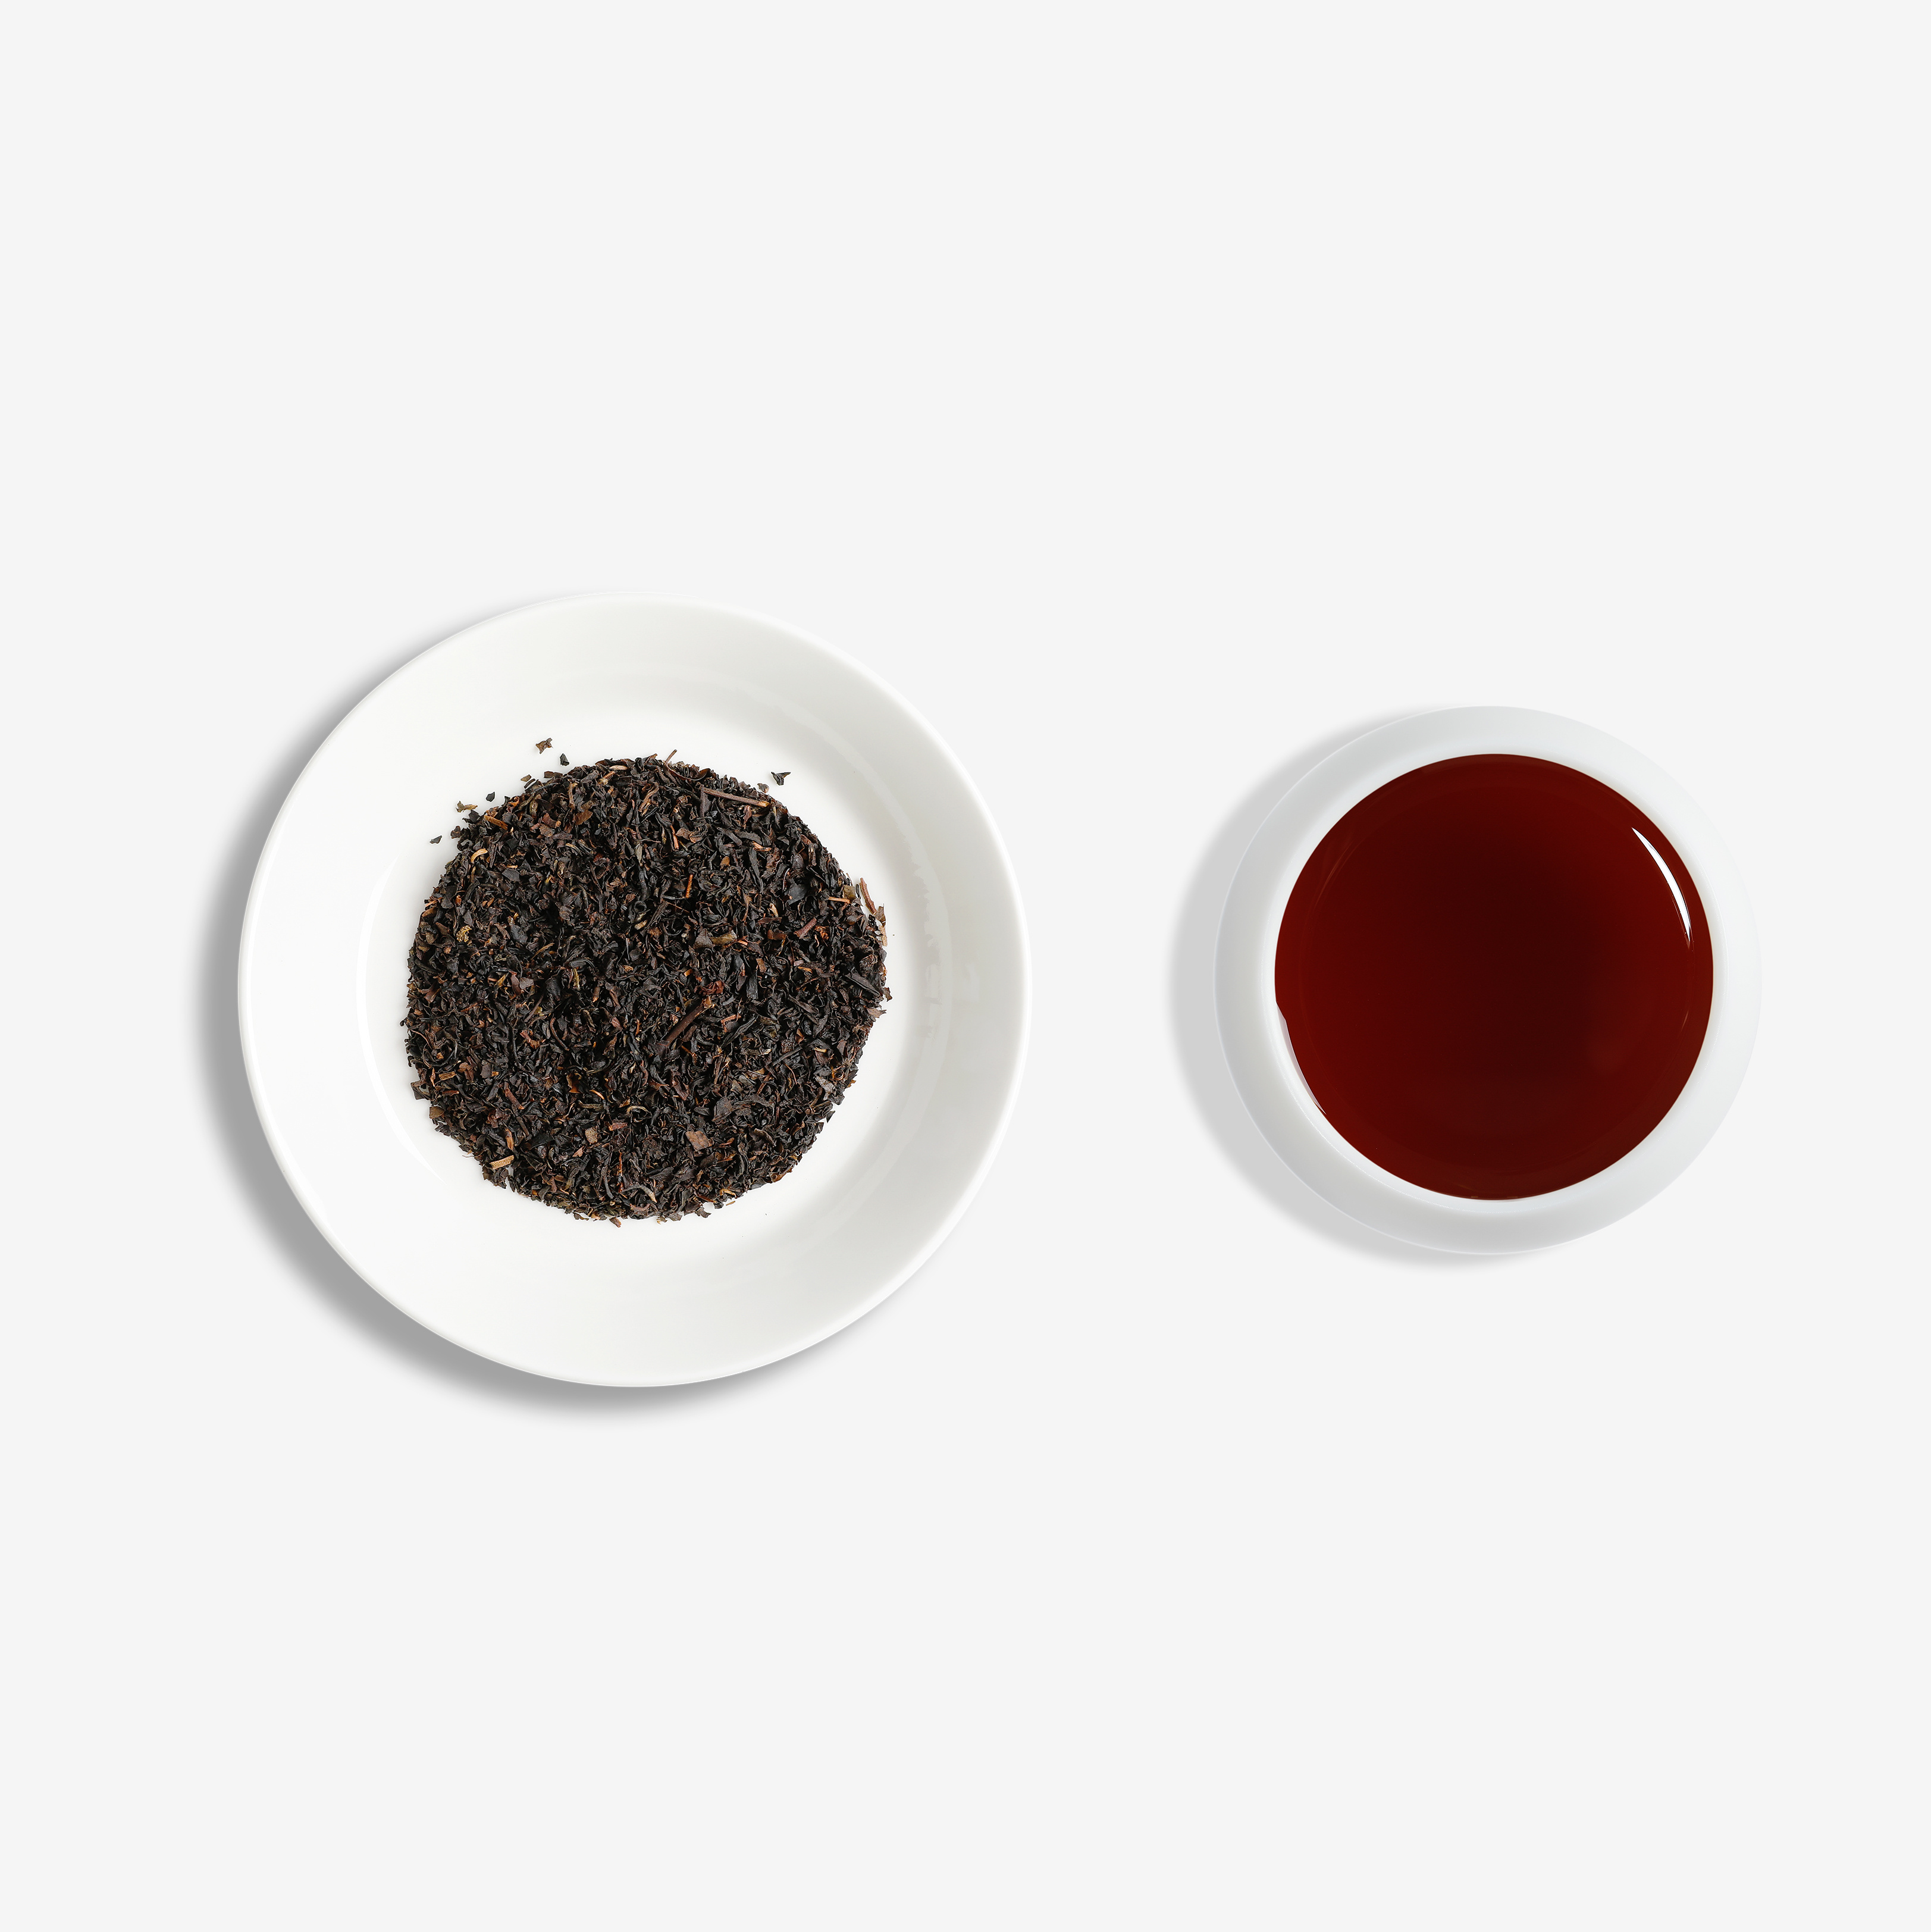 原香红茶B